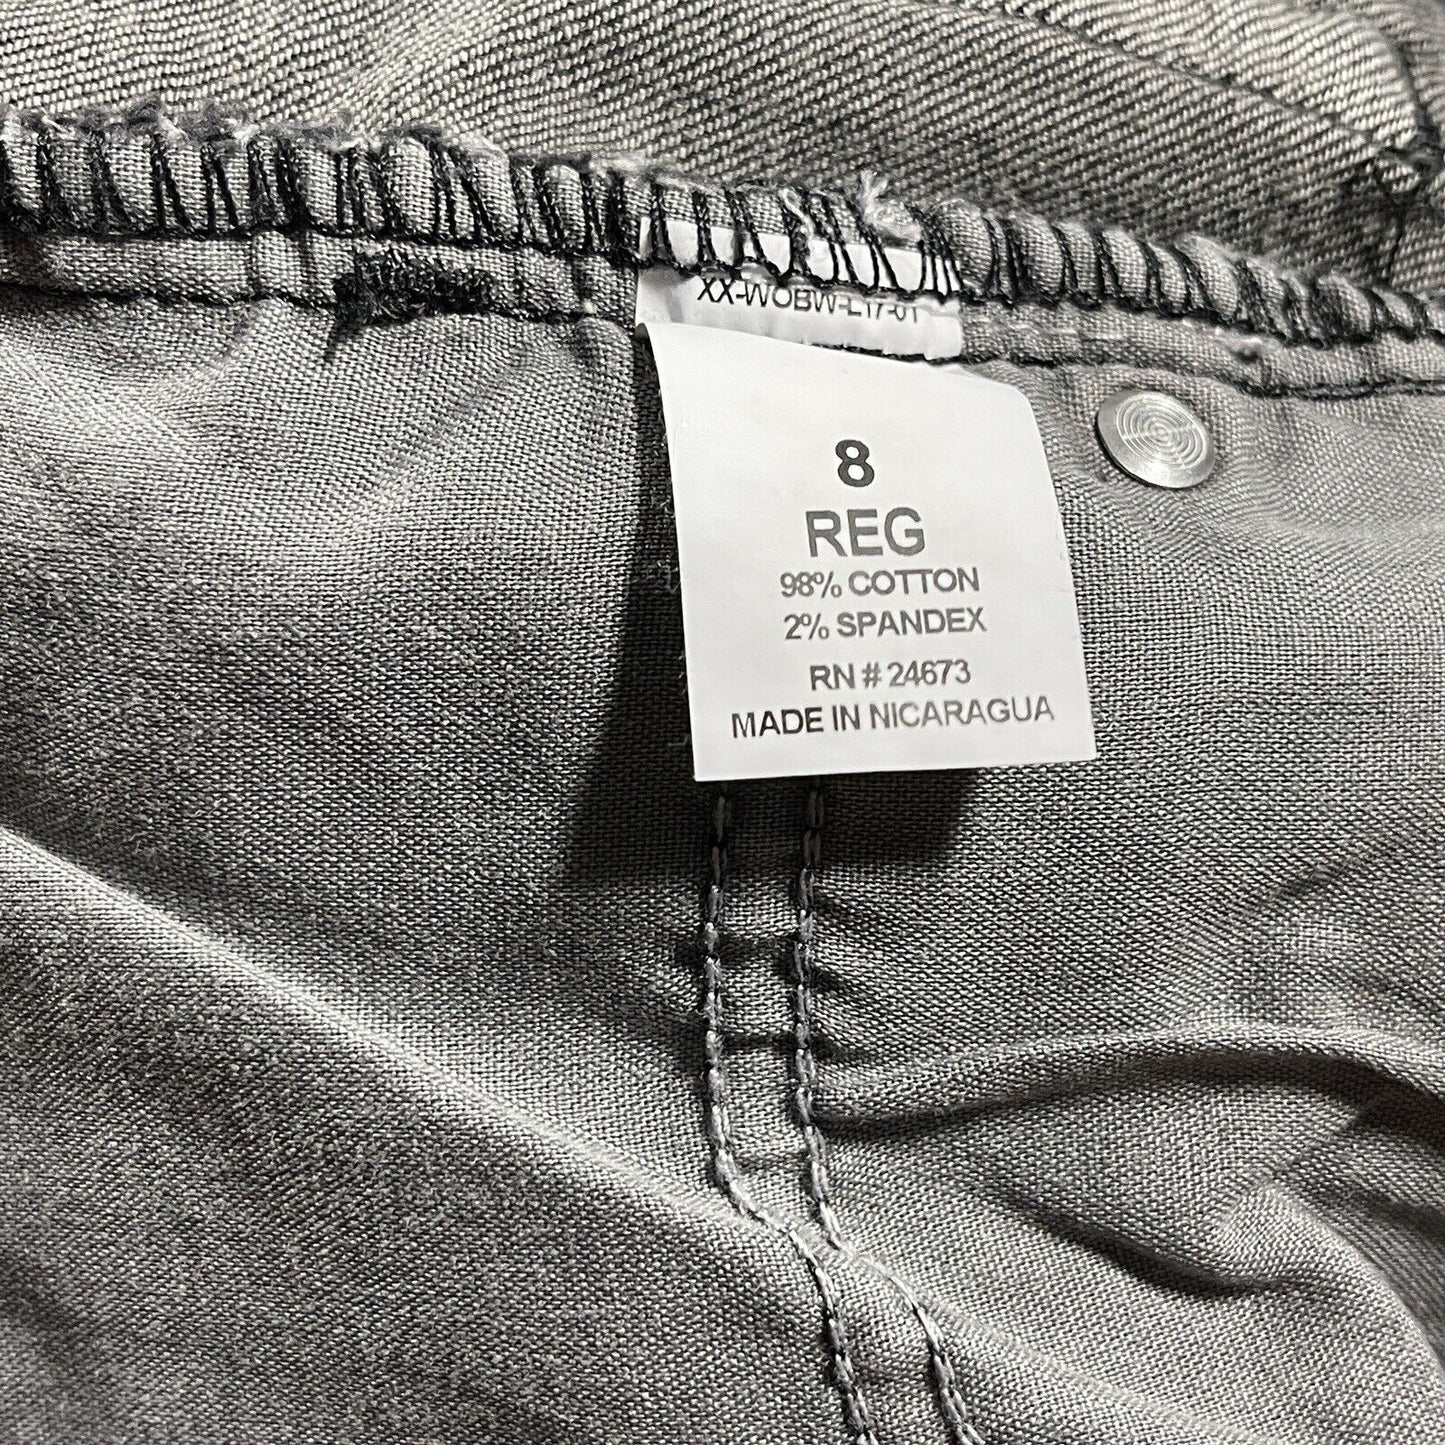 Sonoma Jeans Boys Sz 8 Straight Slim Fit Black Faded Wash Adjustable Waist